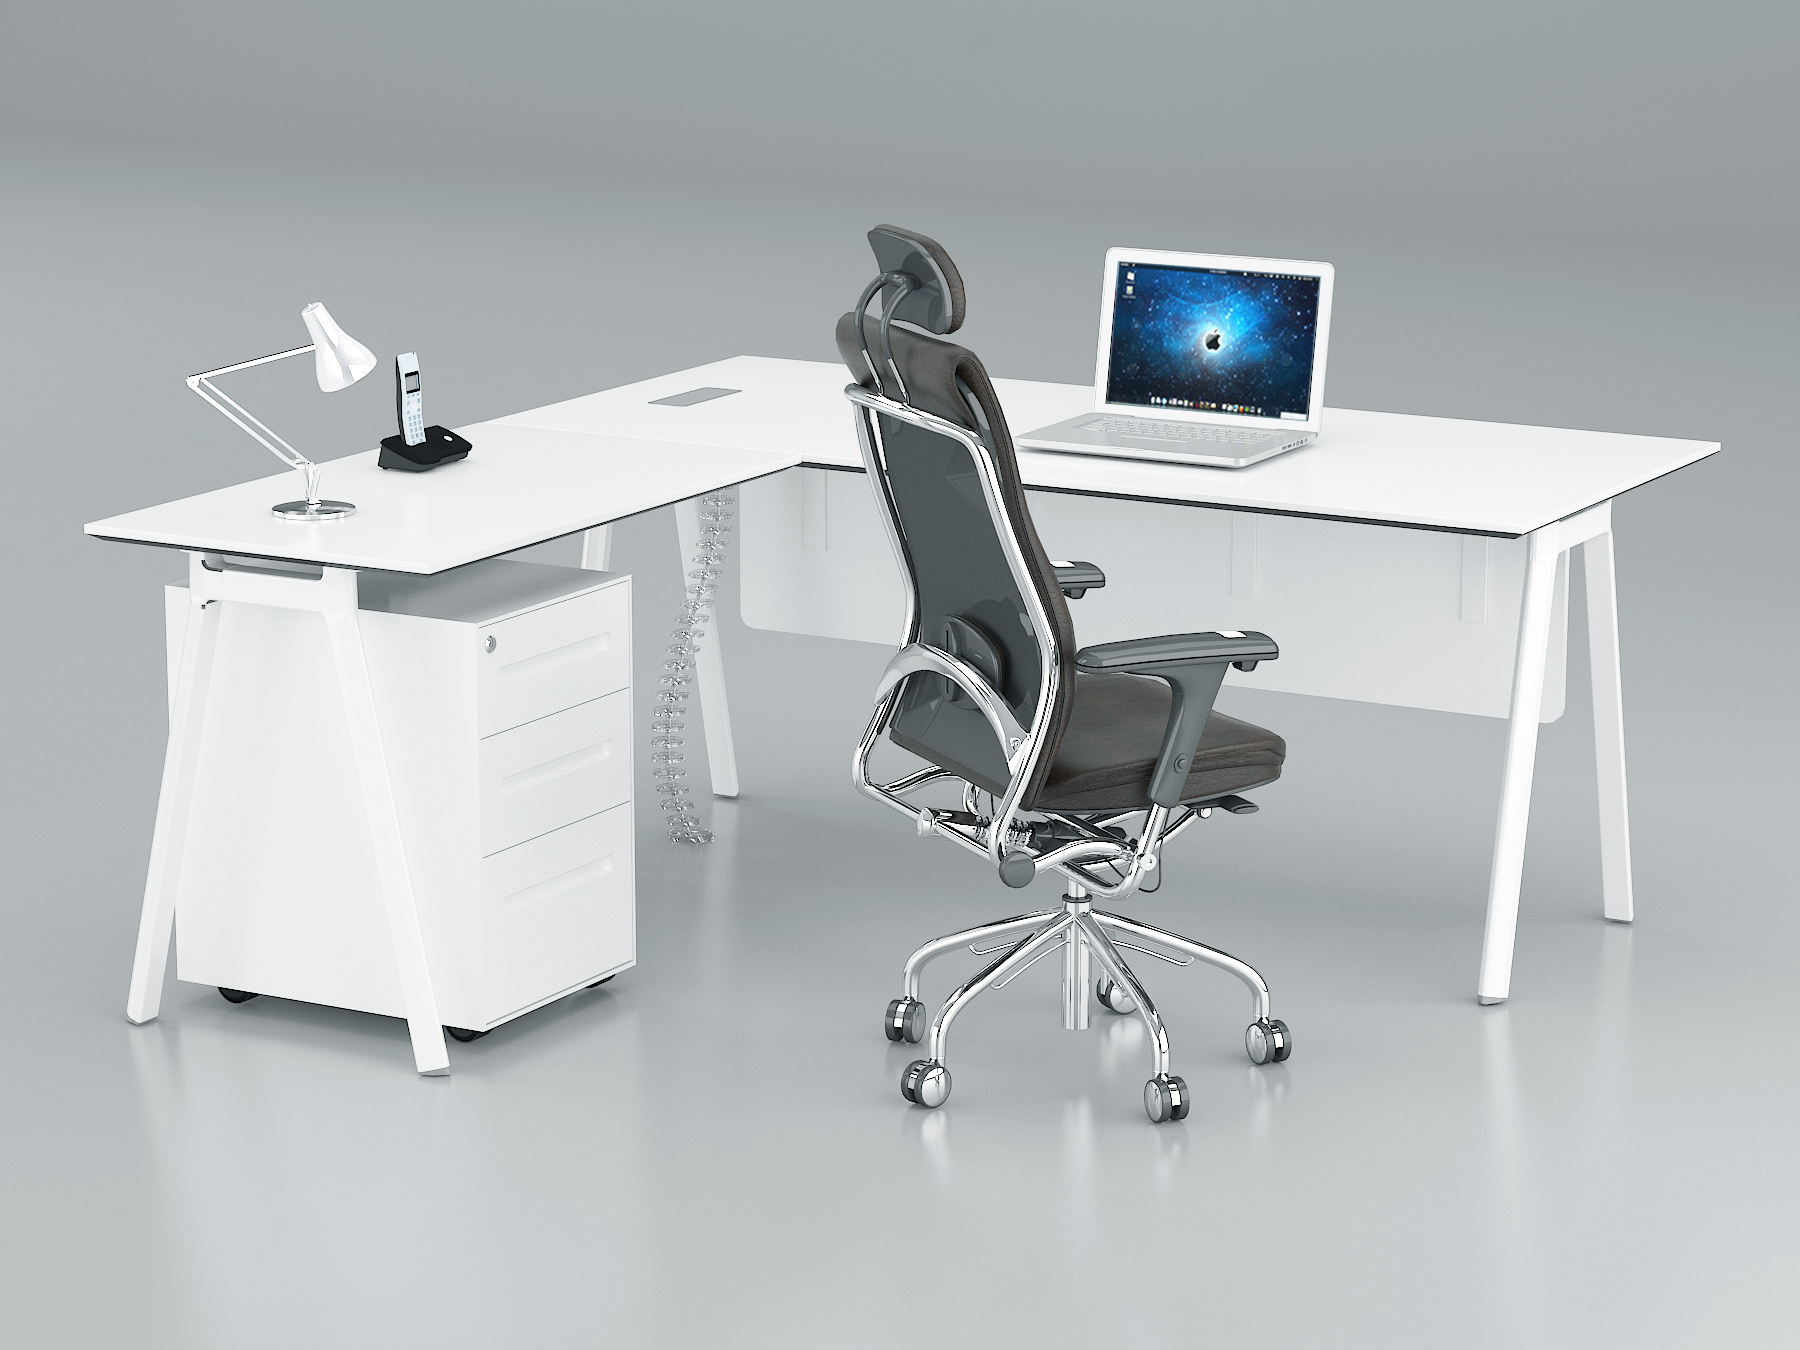 Fad L Shape Executive Table. 3 Drawer Mobile Pedestal, With Metal Leg (L160 x W80 xH75)